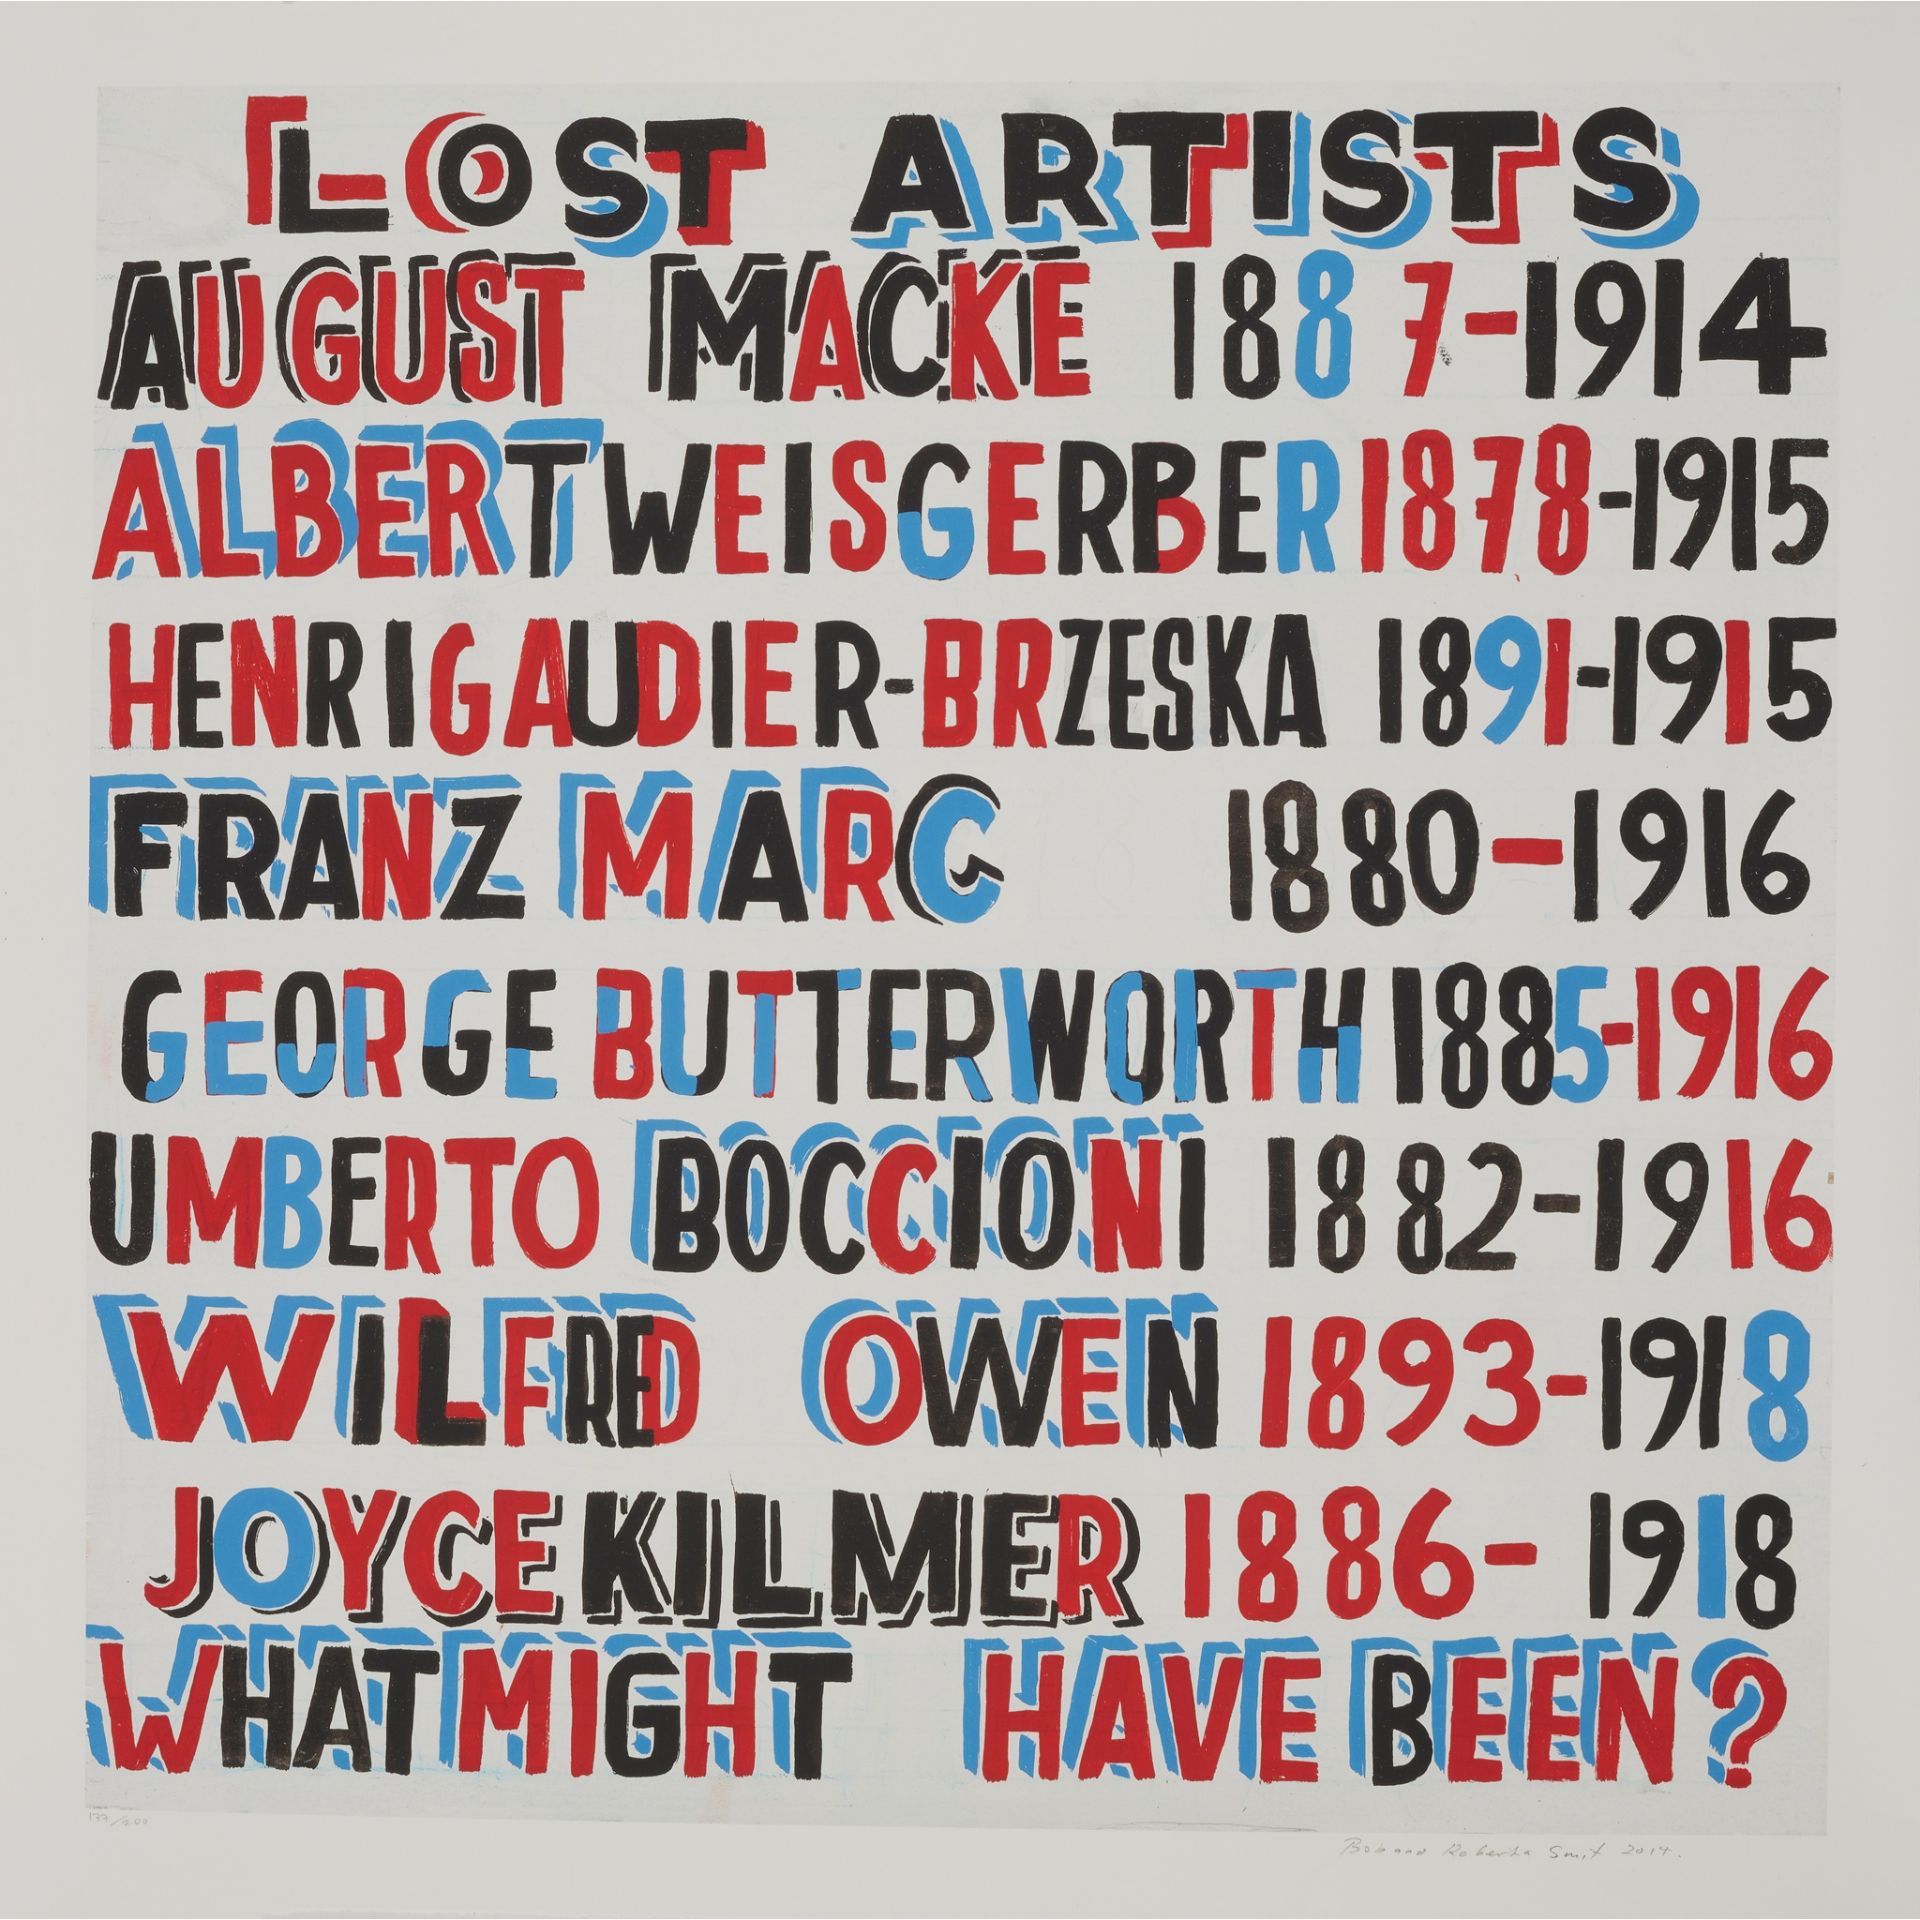 § BOB AND ROBERTA SMITH O.B.E., R.A. (British 1963-) LOST ARTISTS - 2014